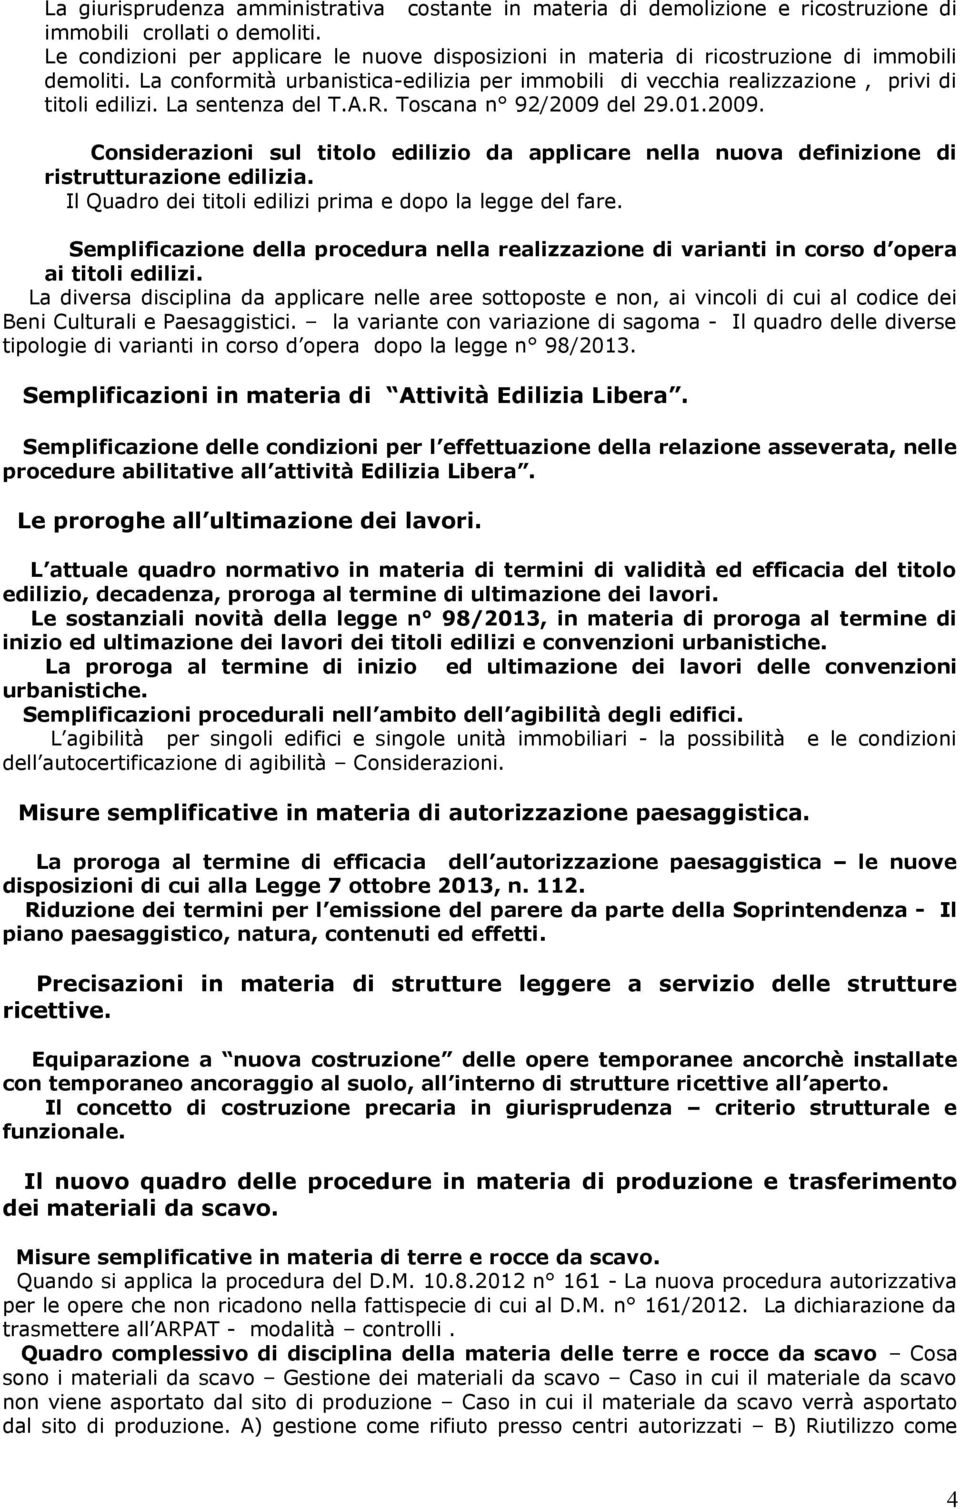 La sentenza del T.A.R. Toscana n 92/2009 del 29.01.2009. Considerazioni sul titolo edilizio da applicare nella nuova definizione di Il Quadro dei titoli edilizi prima e dopo la legge del fare.